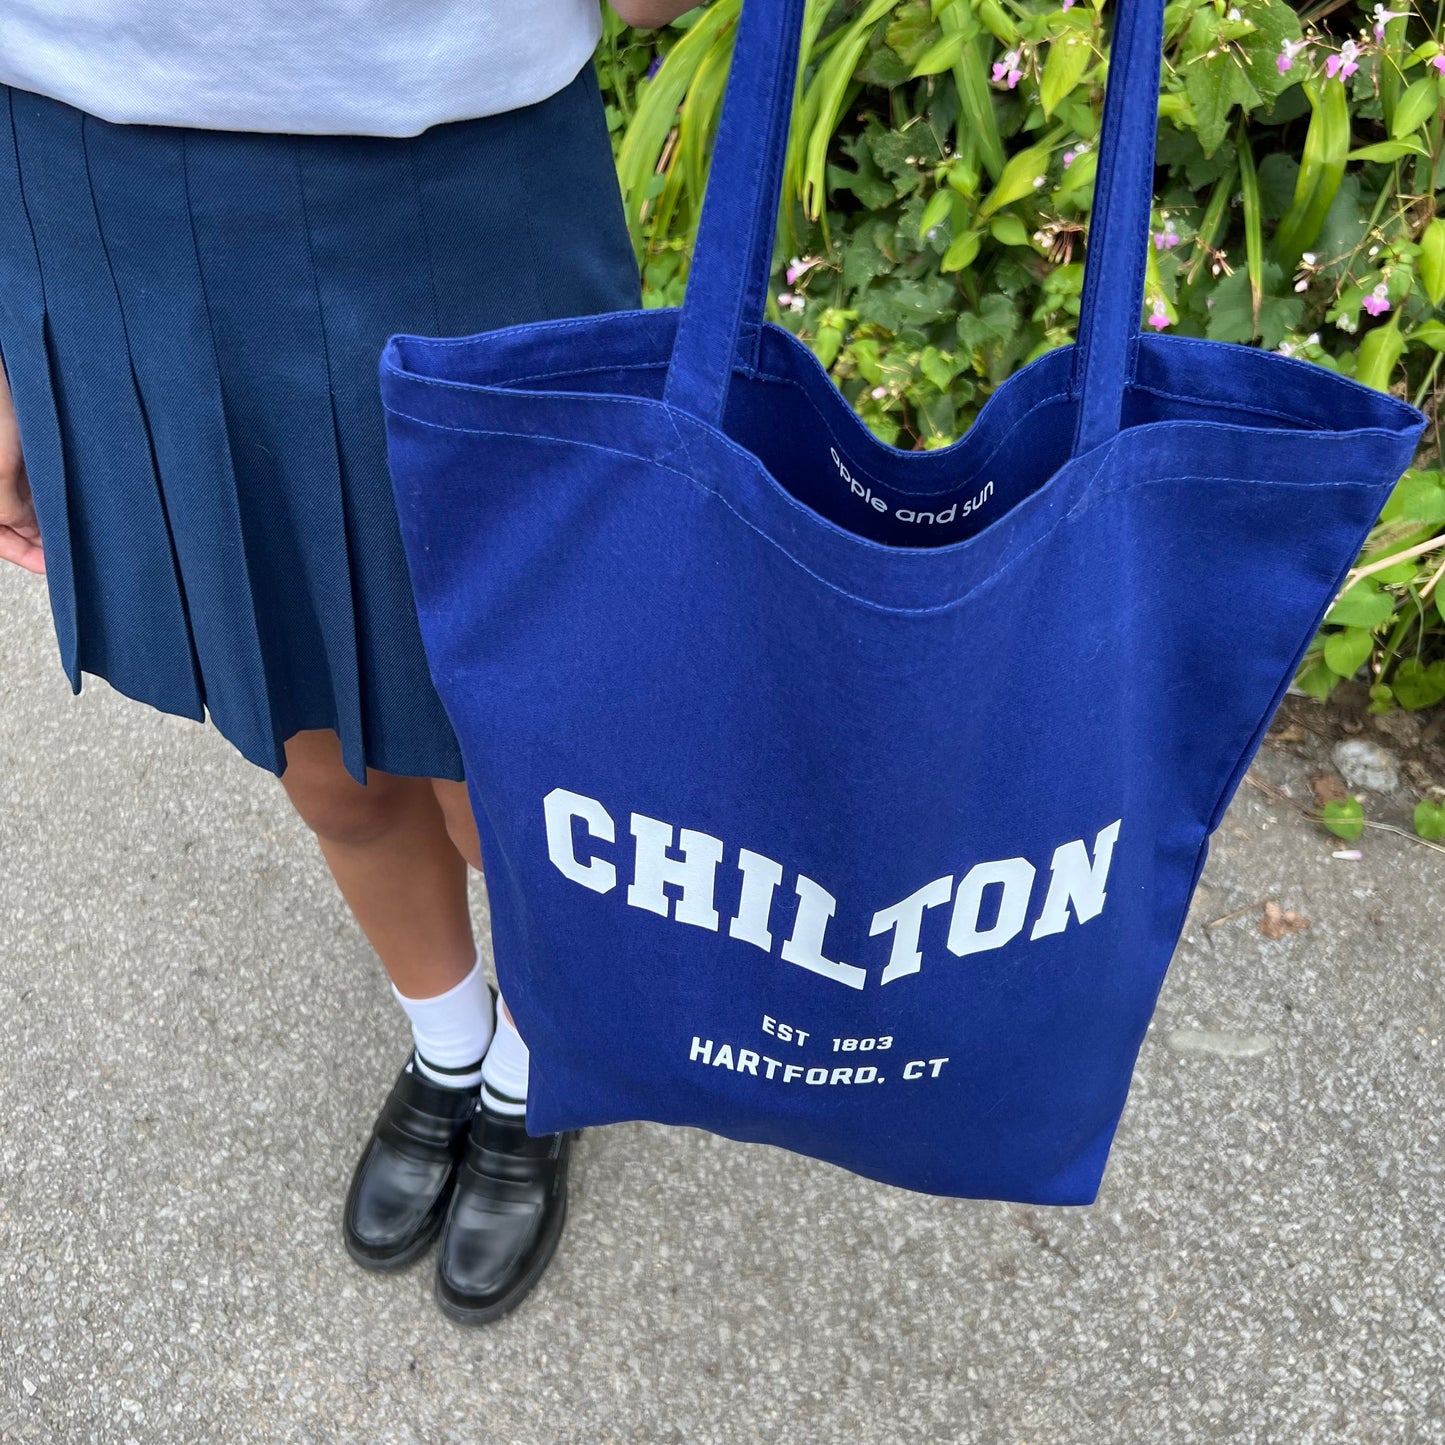 Chilton Tote Bag